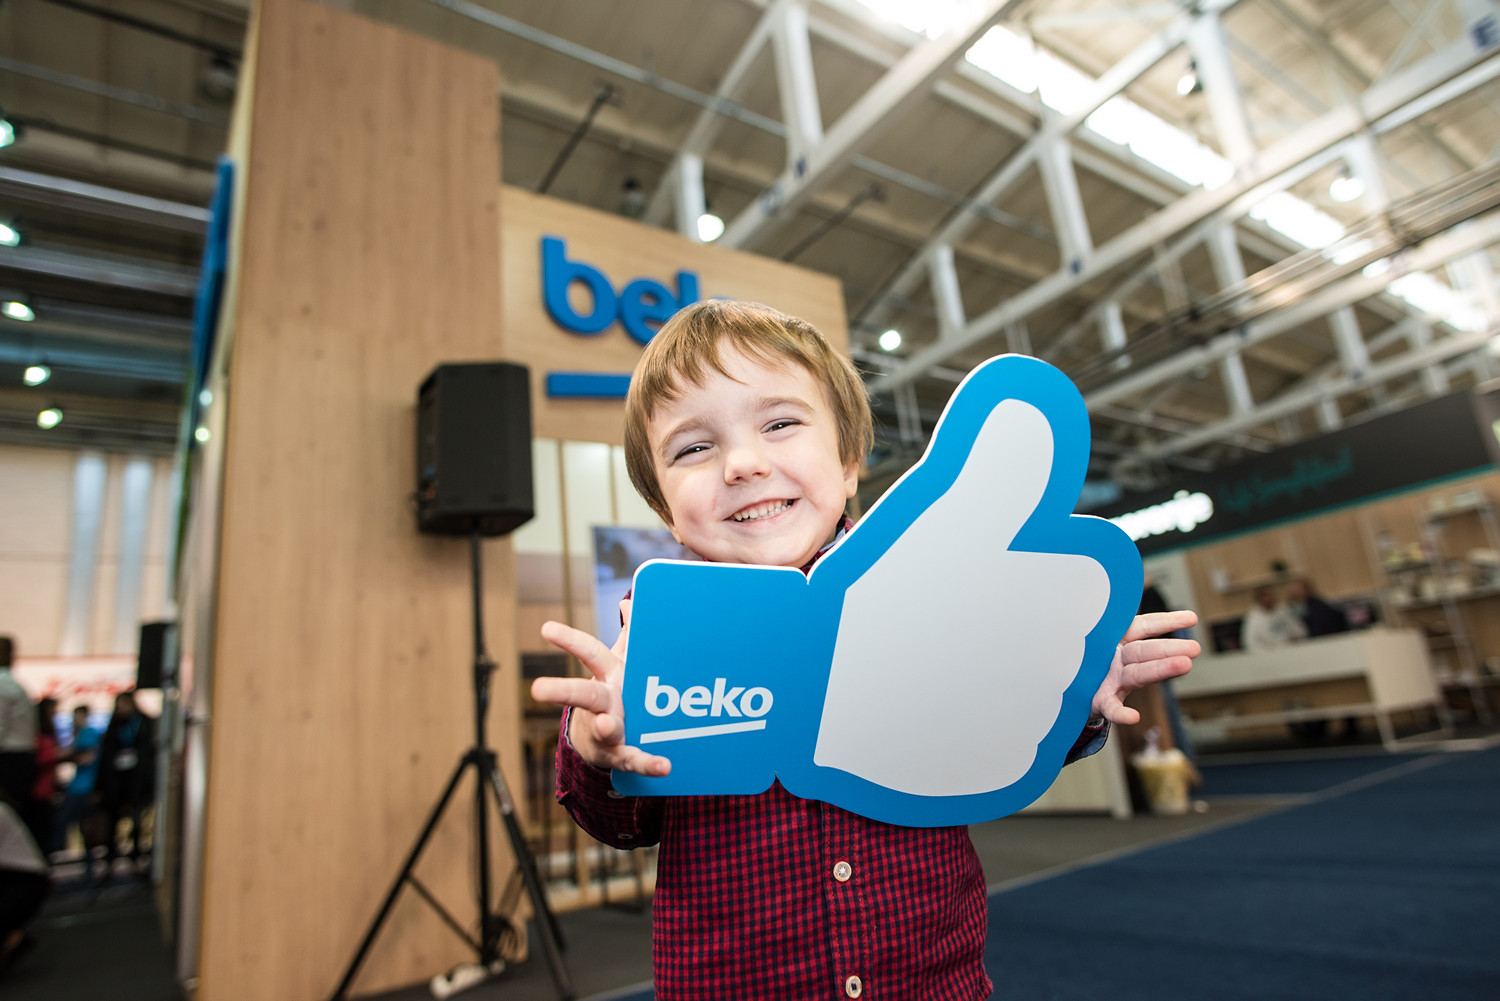 beko на CEE 2019: сучасні технології, які змінюють життя на краще-22